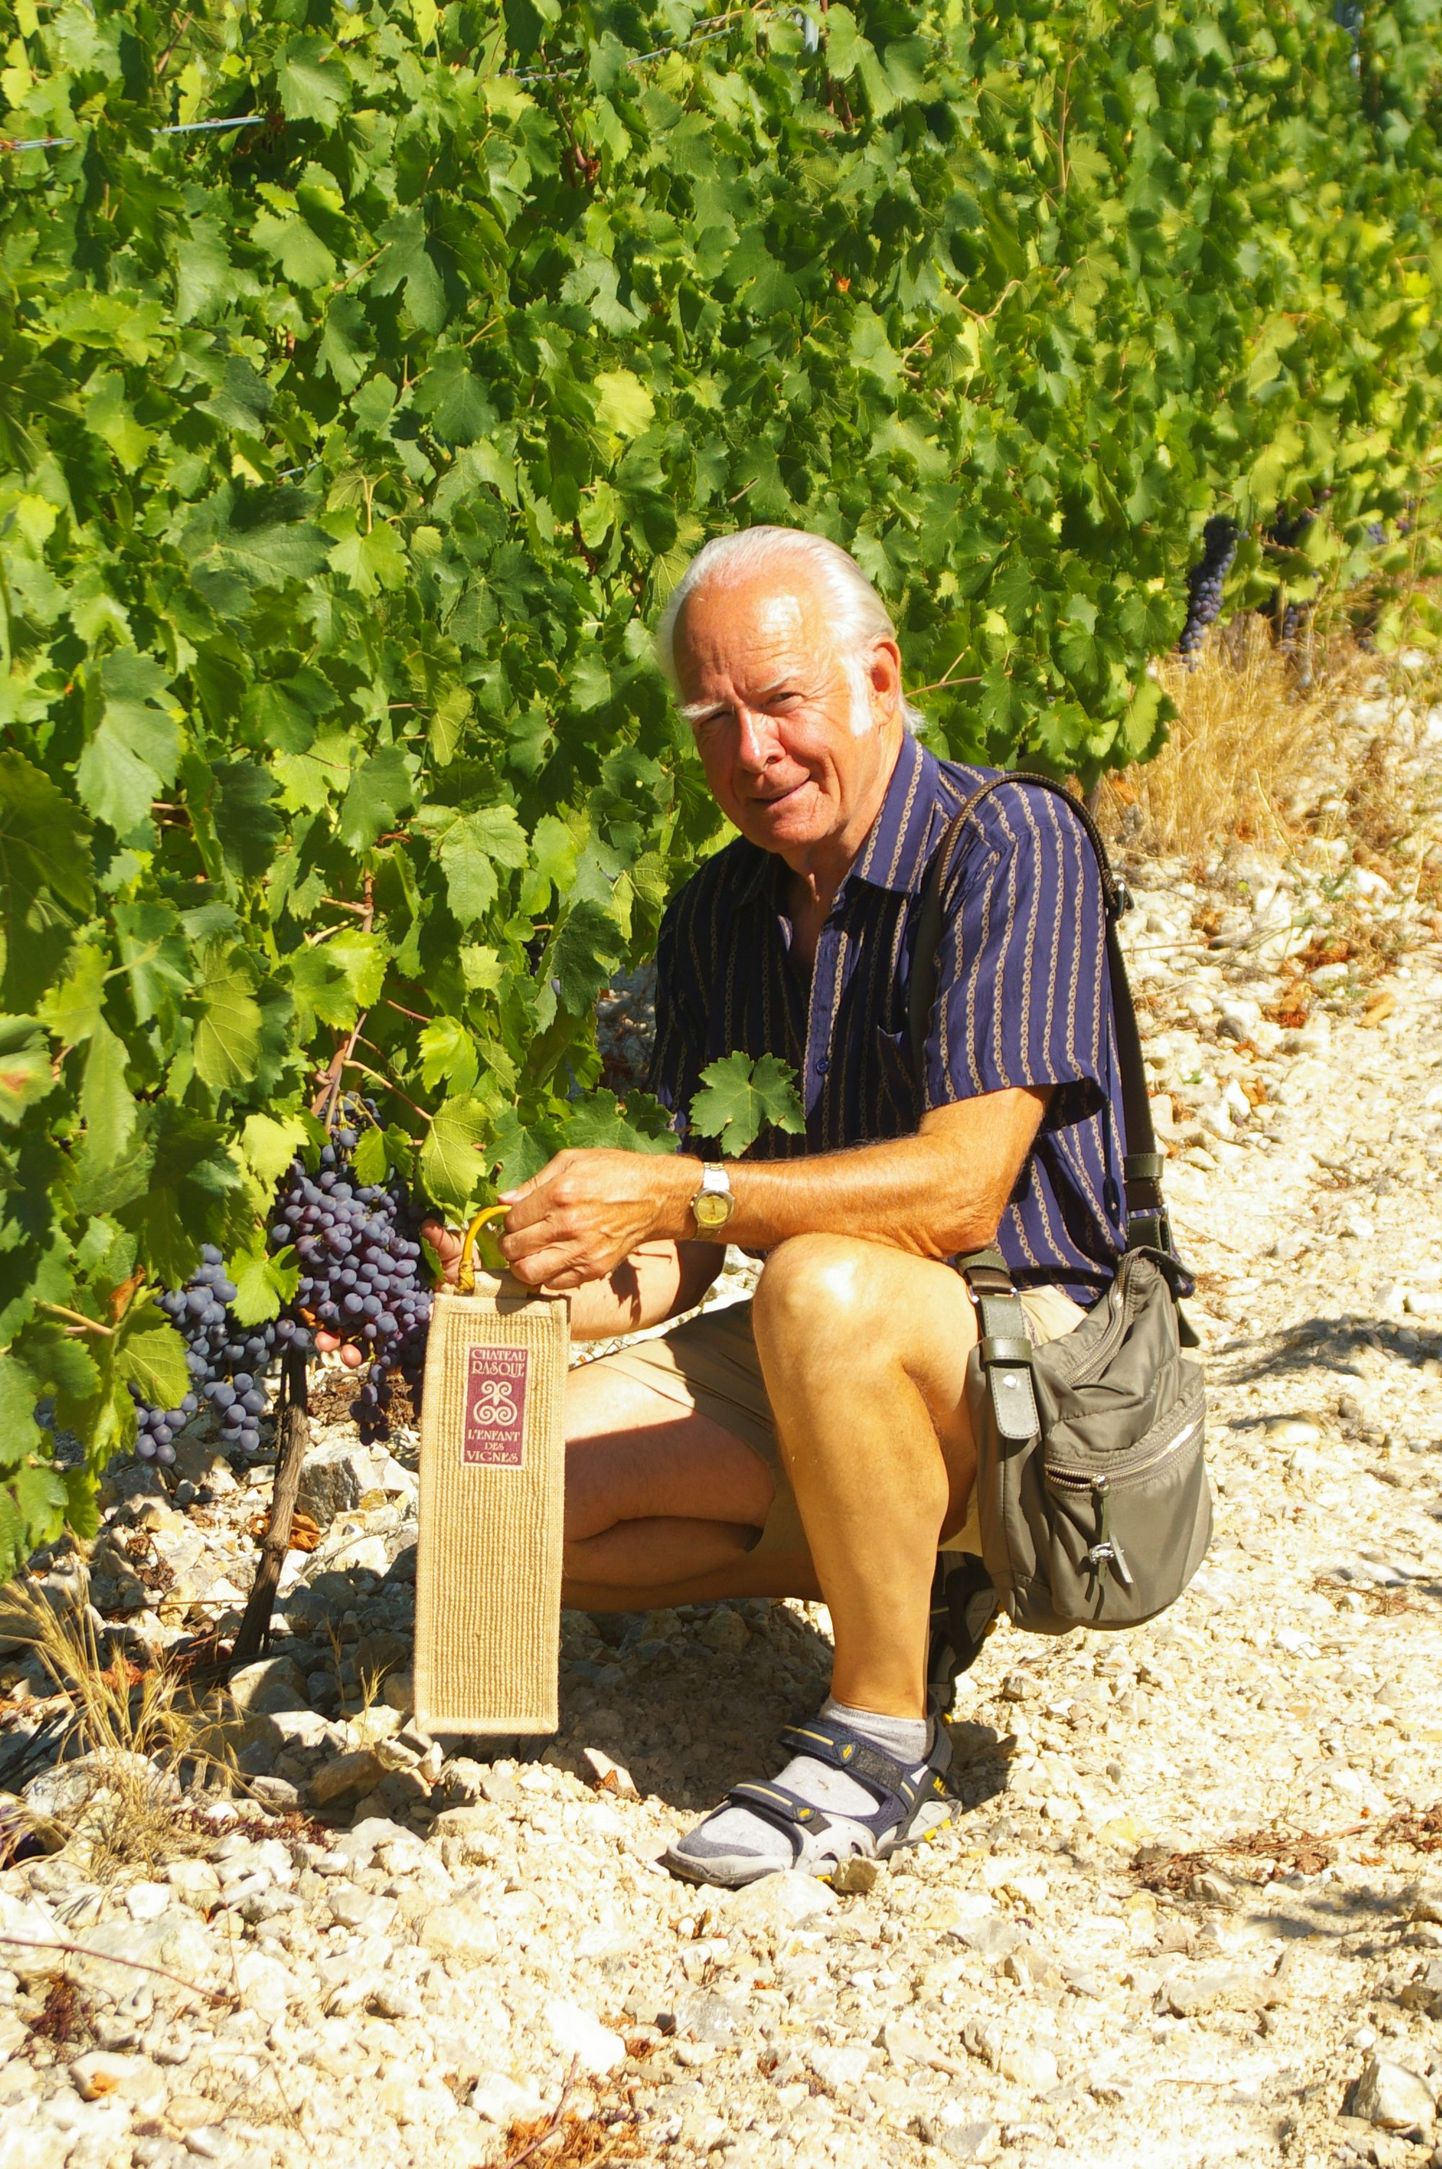 Hillar Kala meelistegevus on reisimine, kuid seda mitte vaid puhkamise eesmärgil, vaid ikka proovimaks ja õppimaks uusi asju. Fotol on mees Prantsusmaal Provence’i veinimõisas.